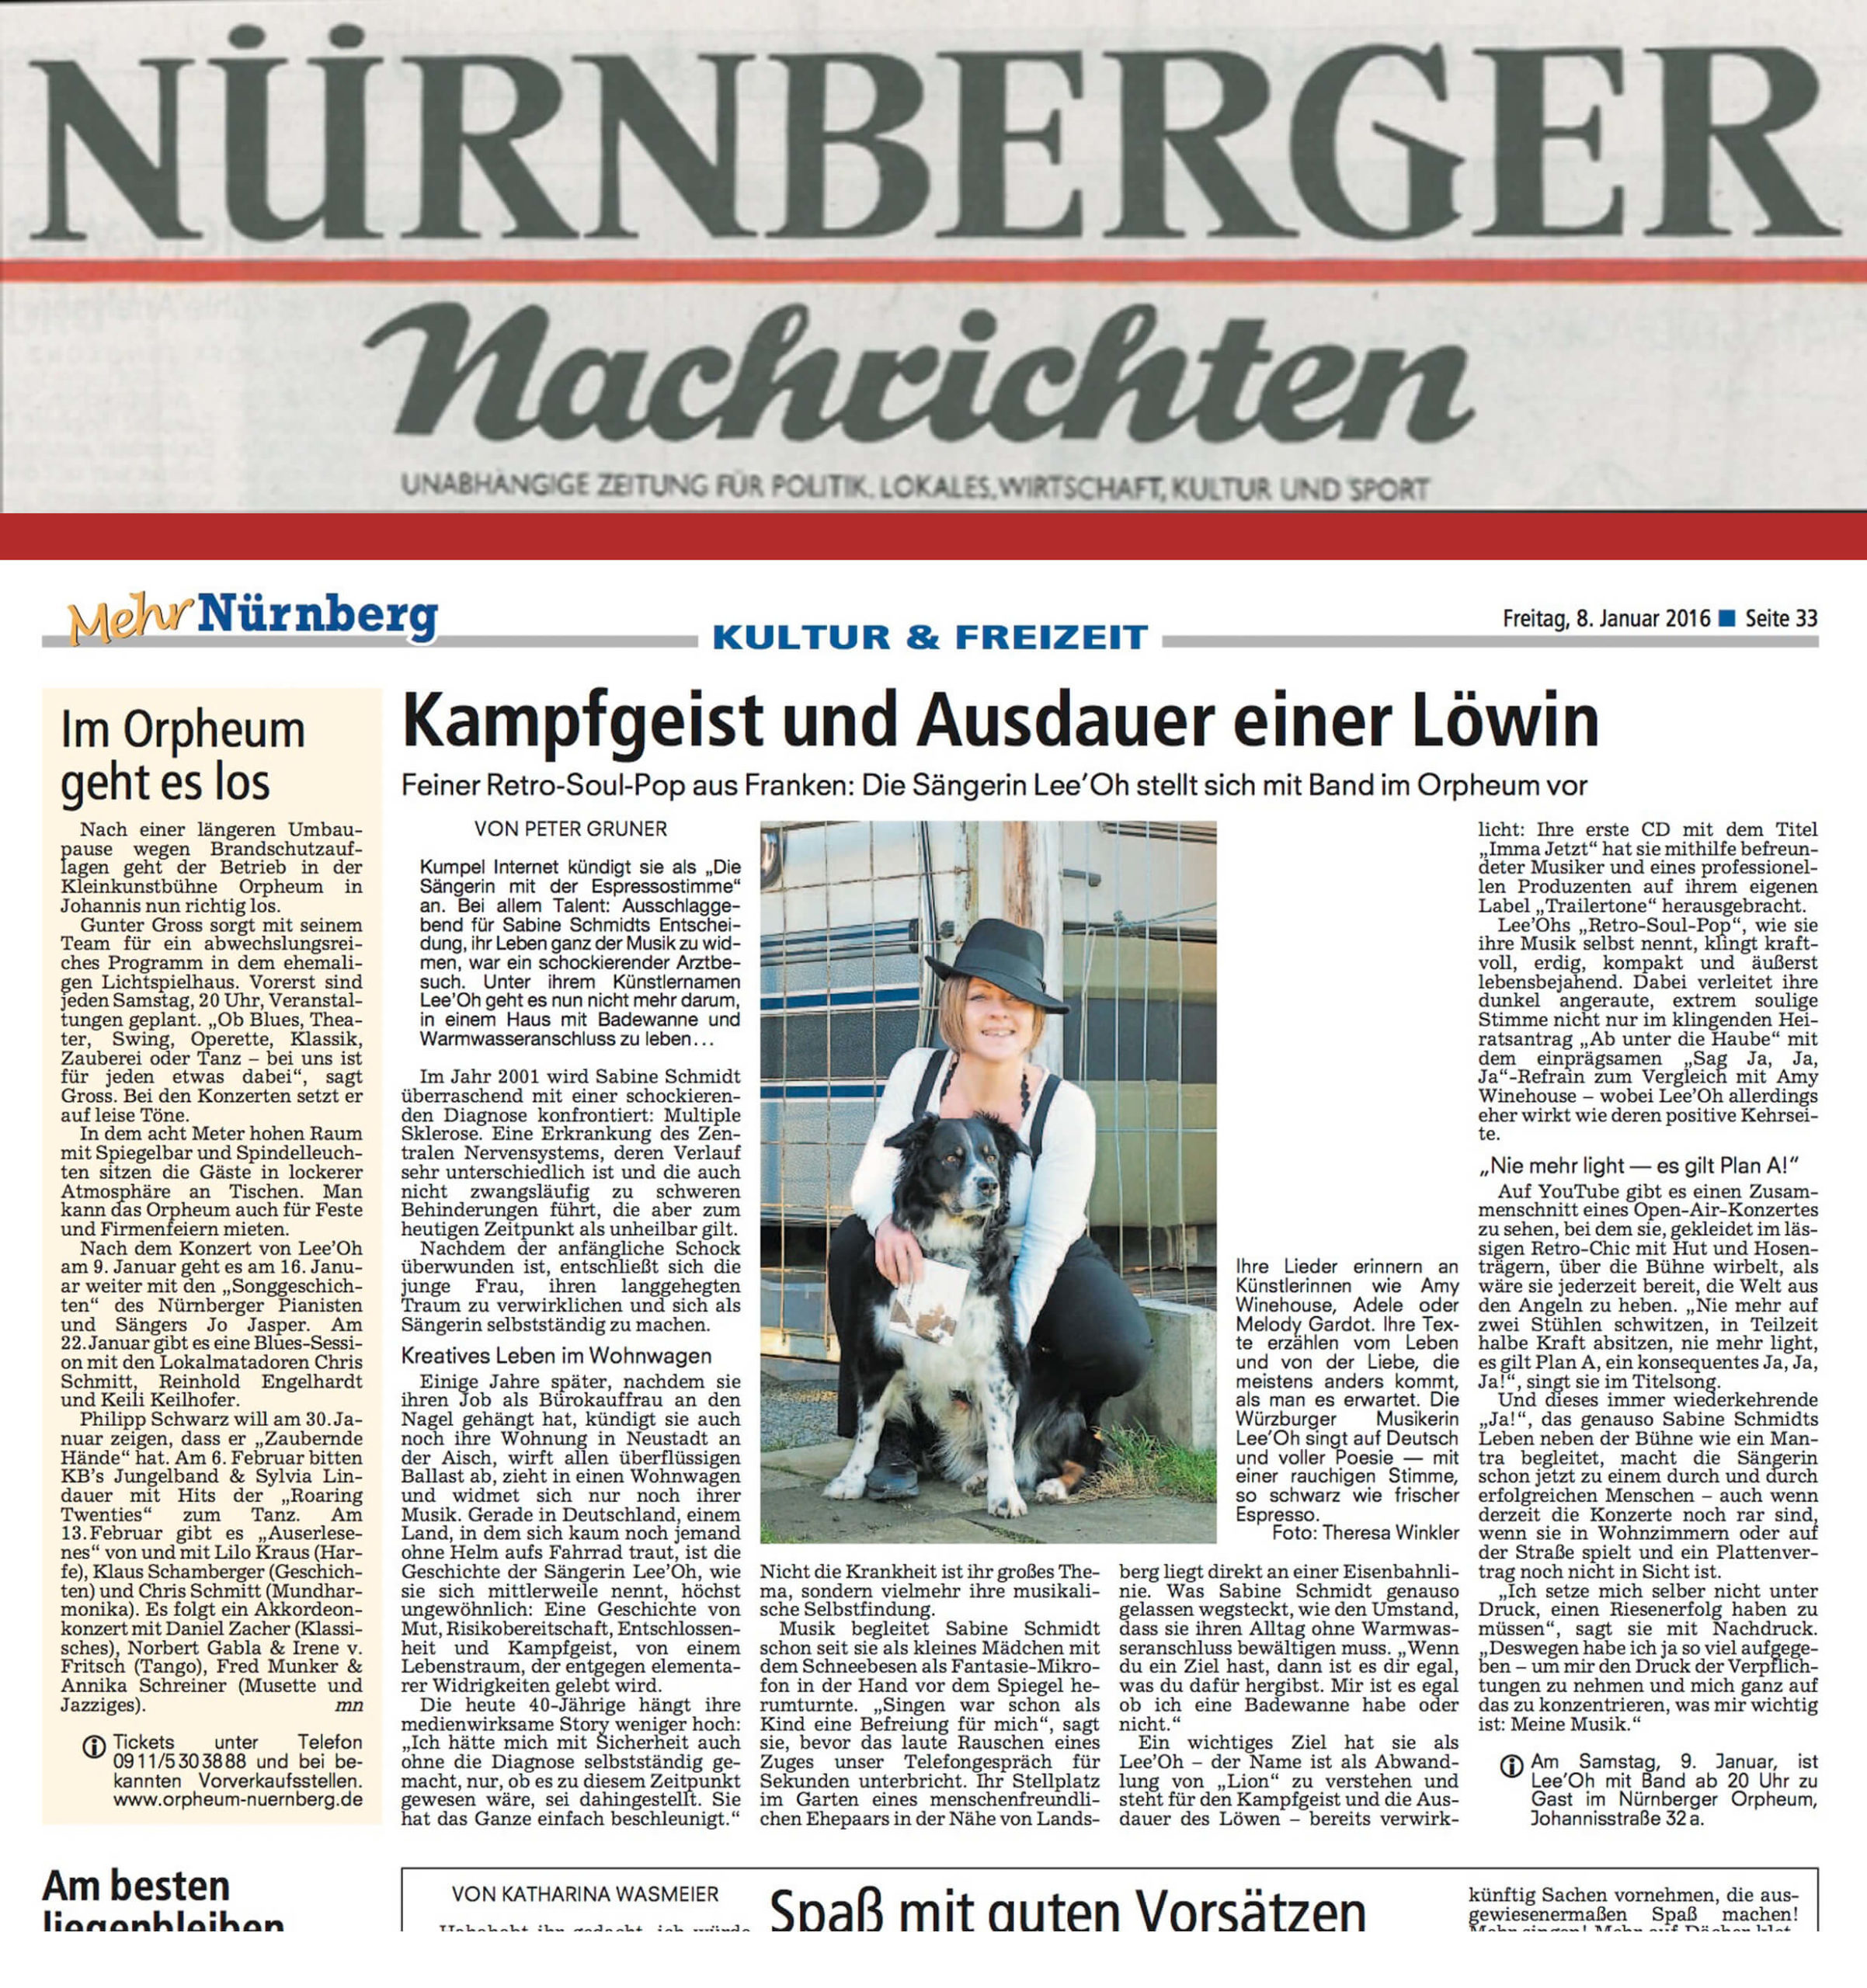 German 20 Nürnberger Nachrichten scaled